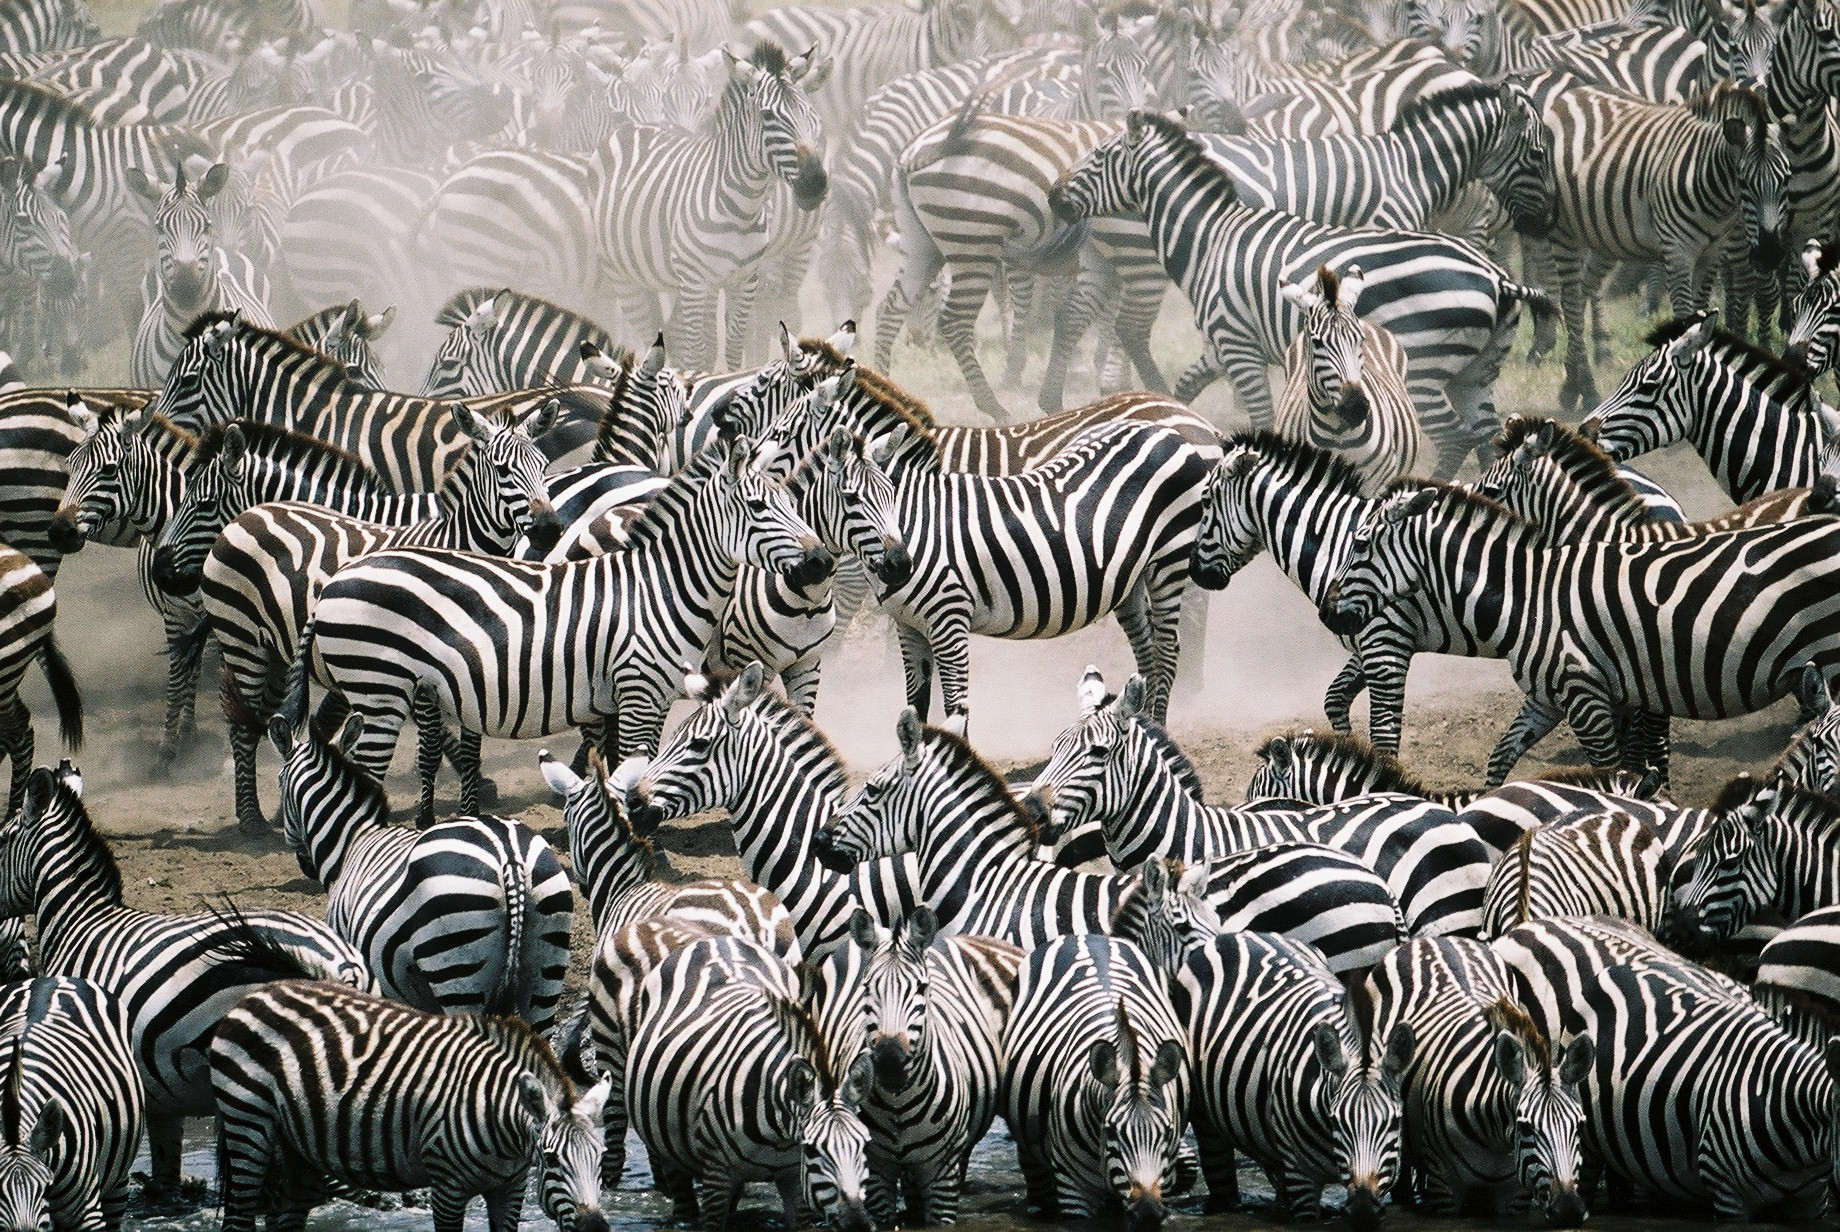 Migrating zebras in Africa